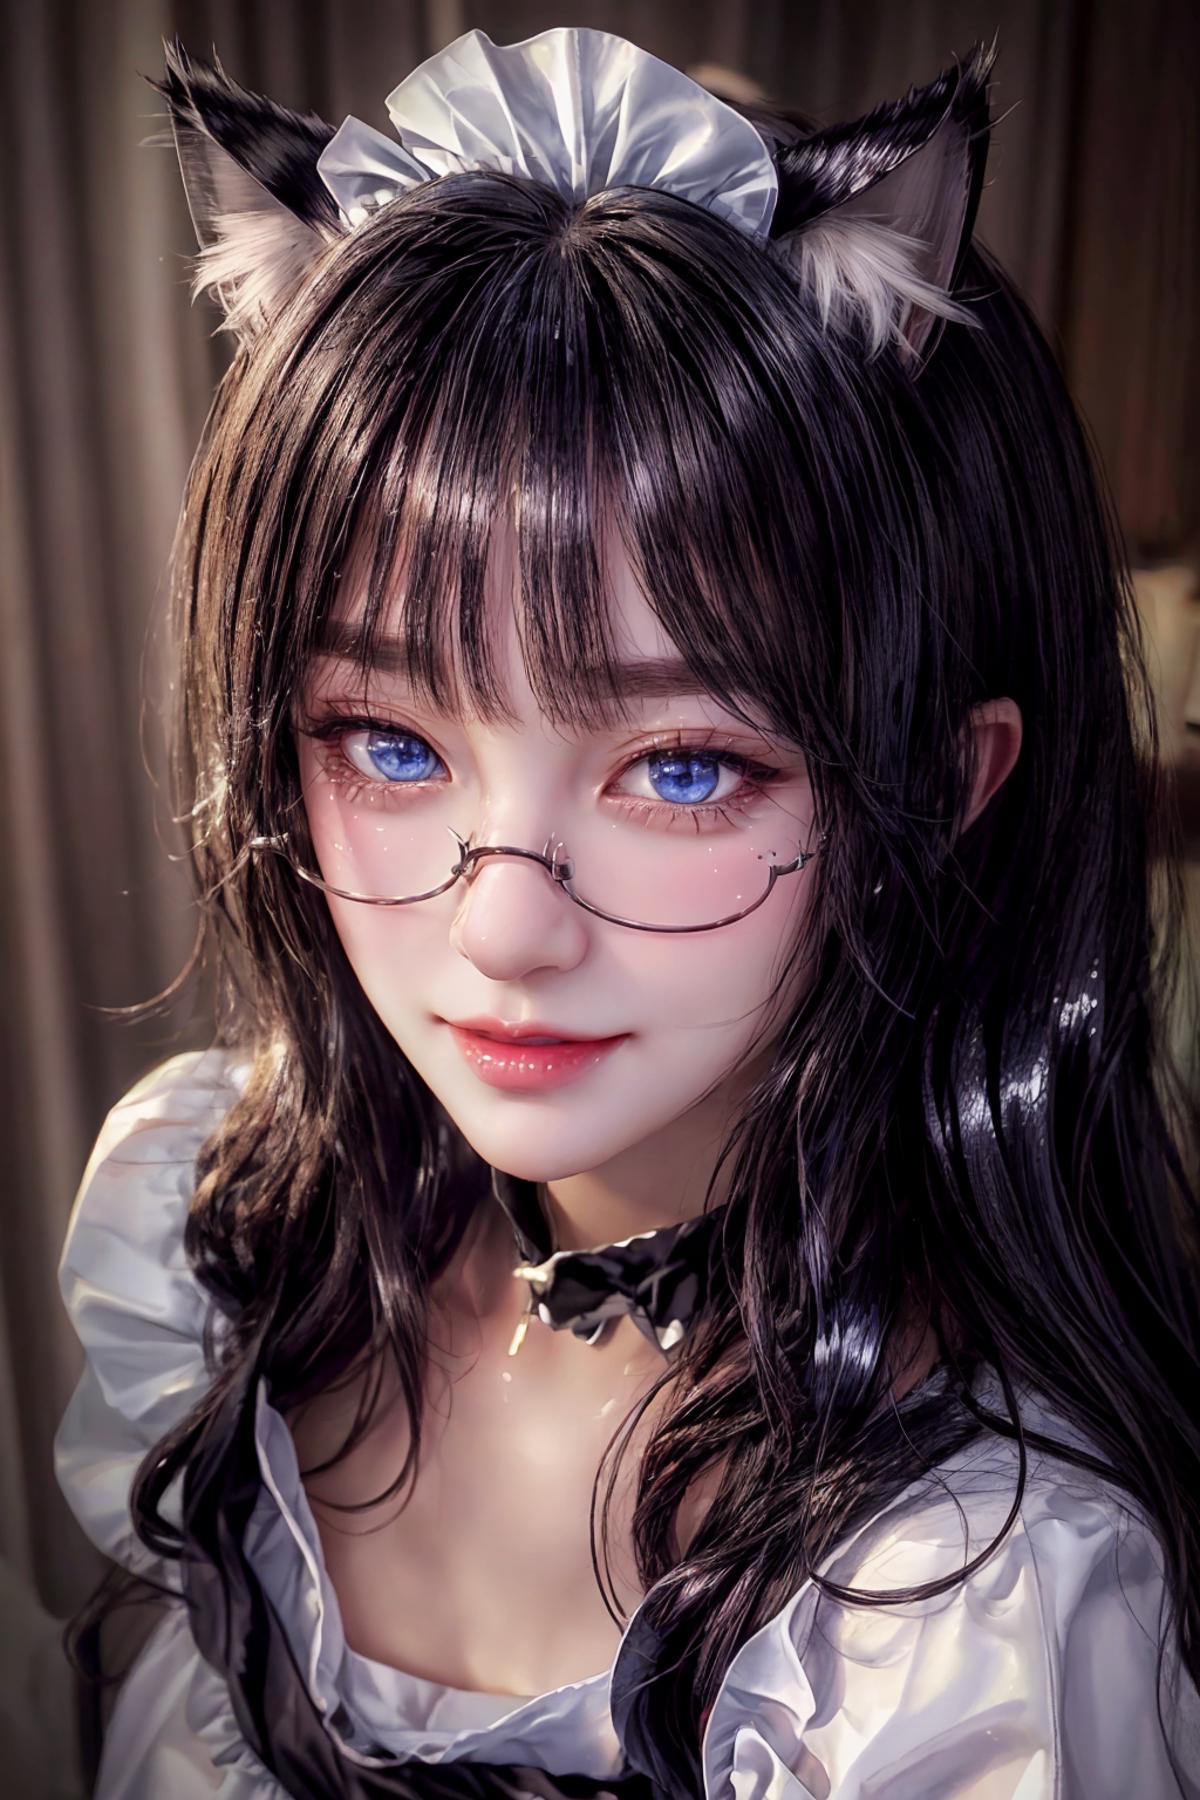 Catgirl Maid image by Code_Breaker_Umbra